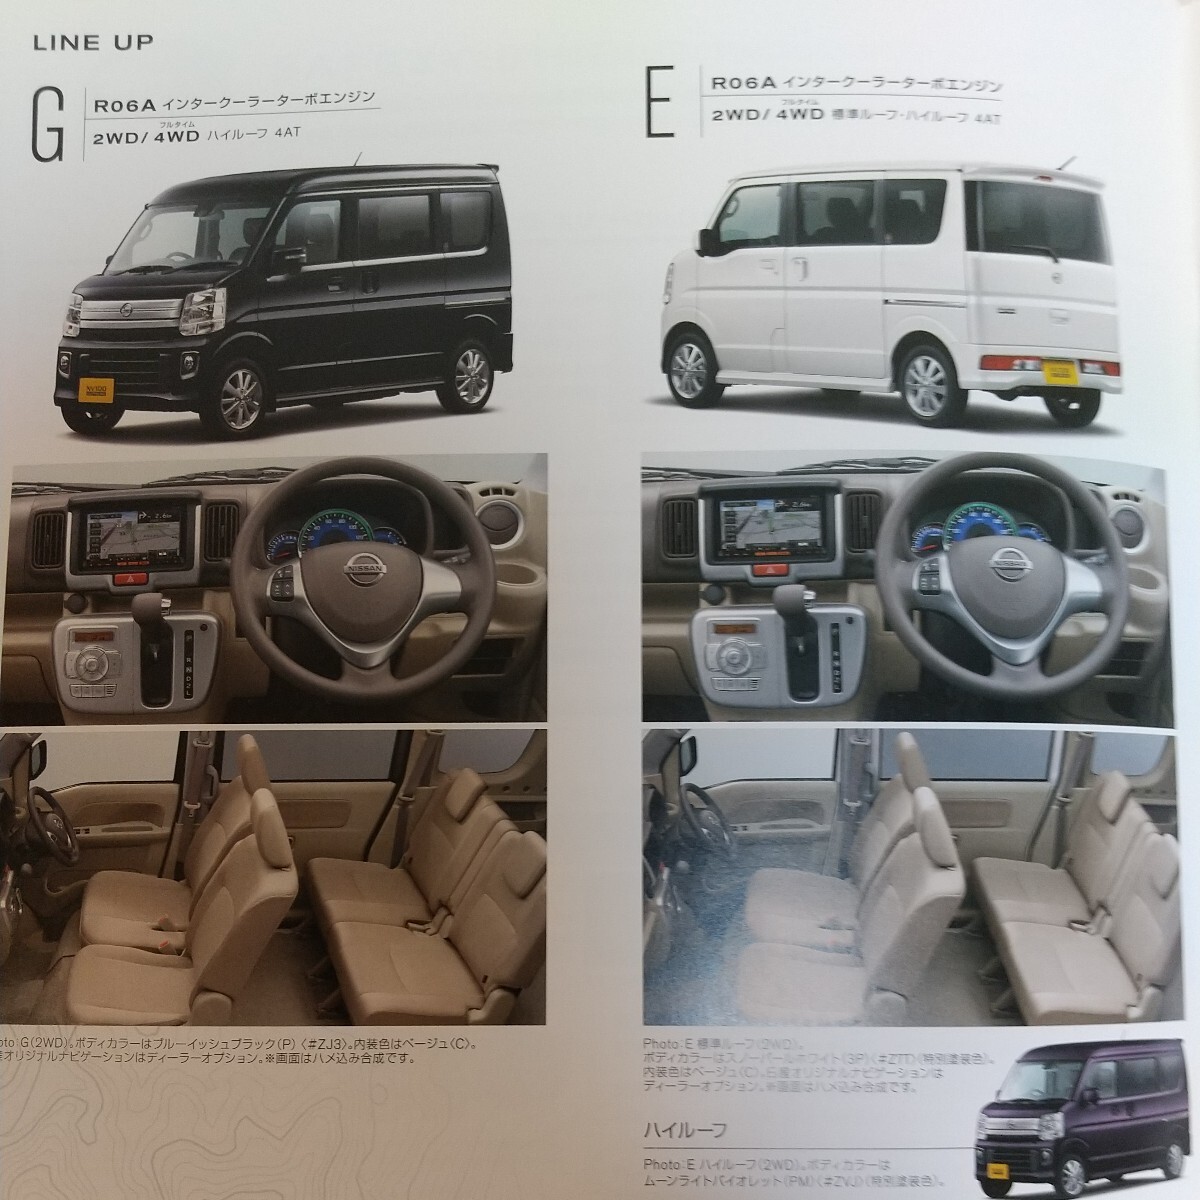 # эпоха Heisei 27 год 3 месяц версия # Nissan NV100 Clipper Rio основной каталог 